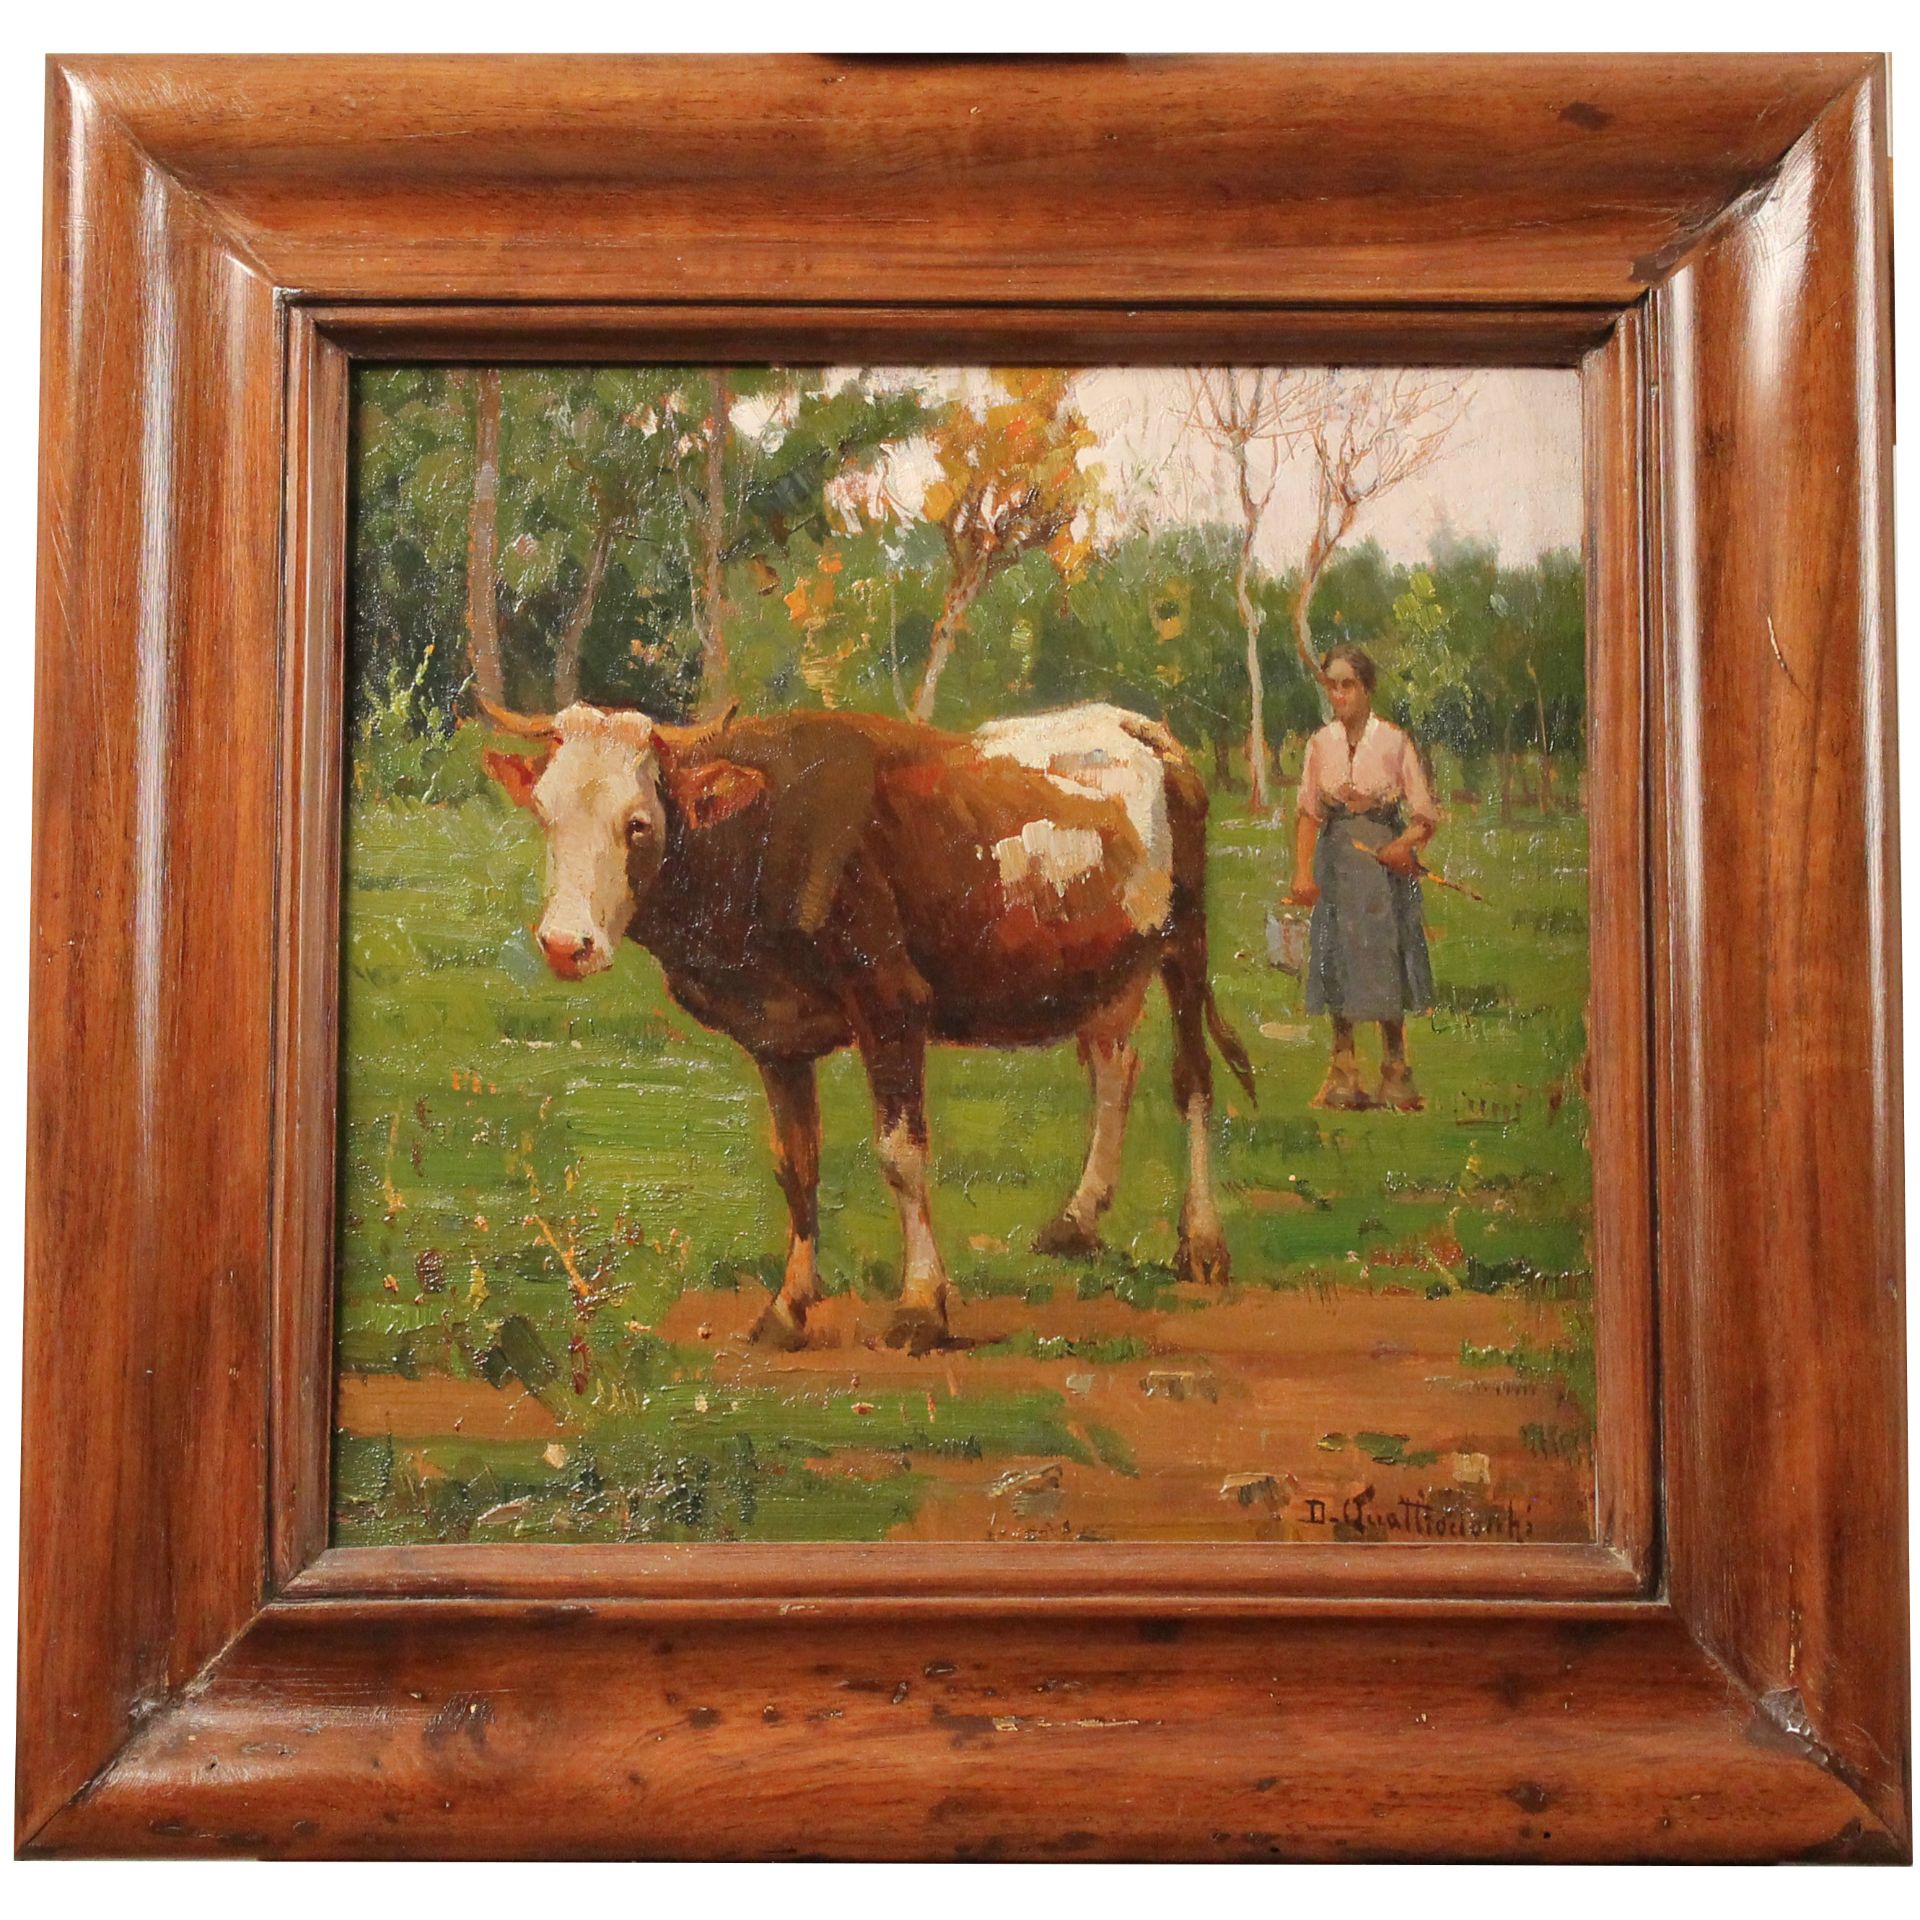 Domenico Quattrociocchi (1872/1941) "La mucca" - "The cow"